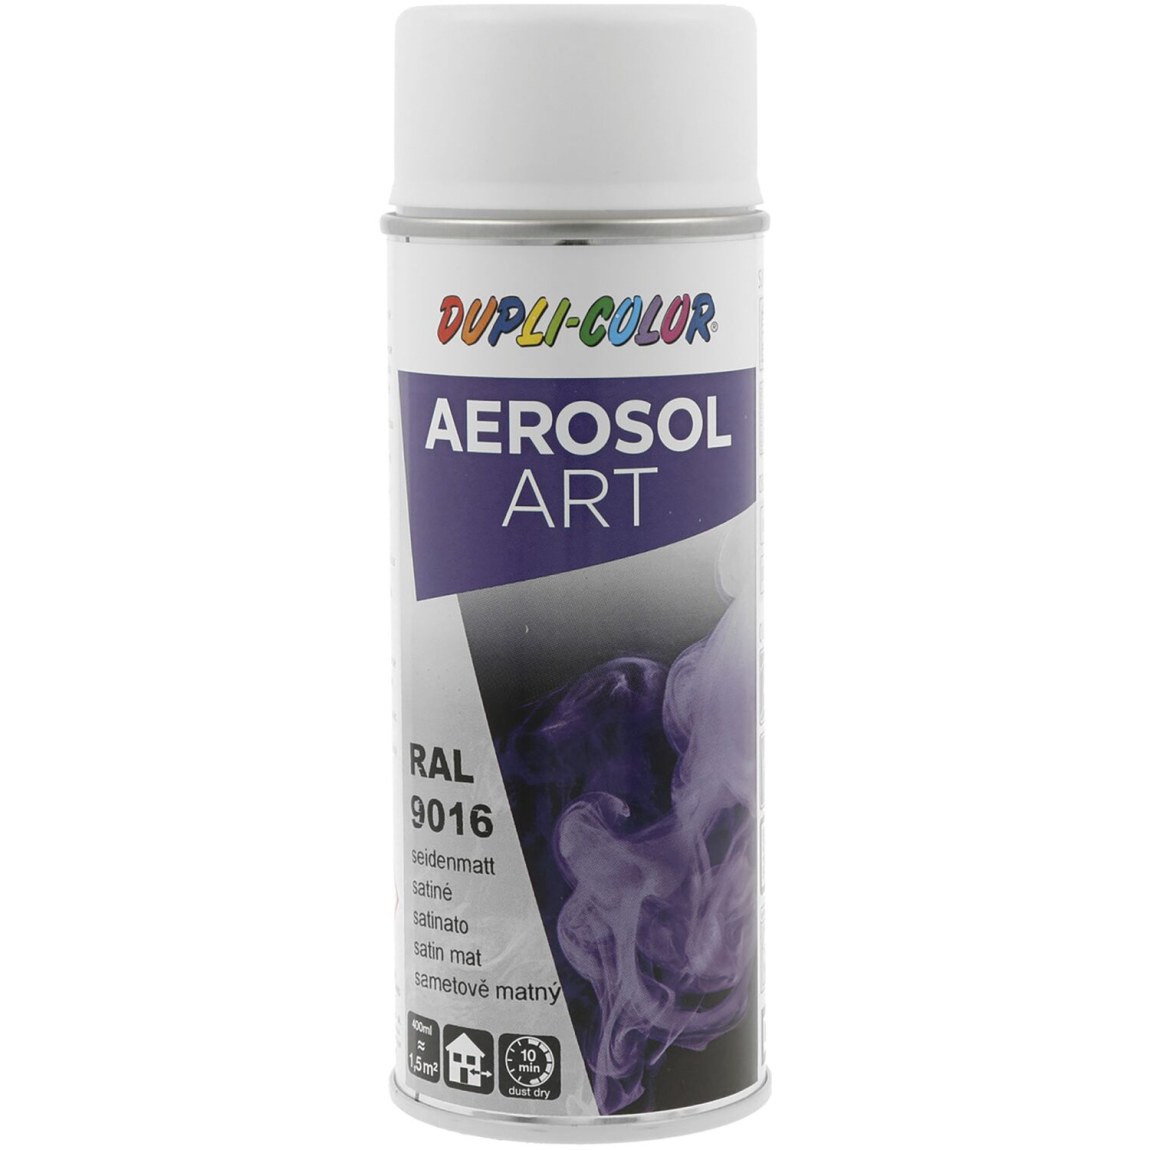 Dupli-Color Aerosol Art sprej 400 ml doprav.bílá hedv.mat / RAL 9016 - Železářství Chemicko-technické výrobky Technické aerosoly Lak ve Spreji